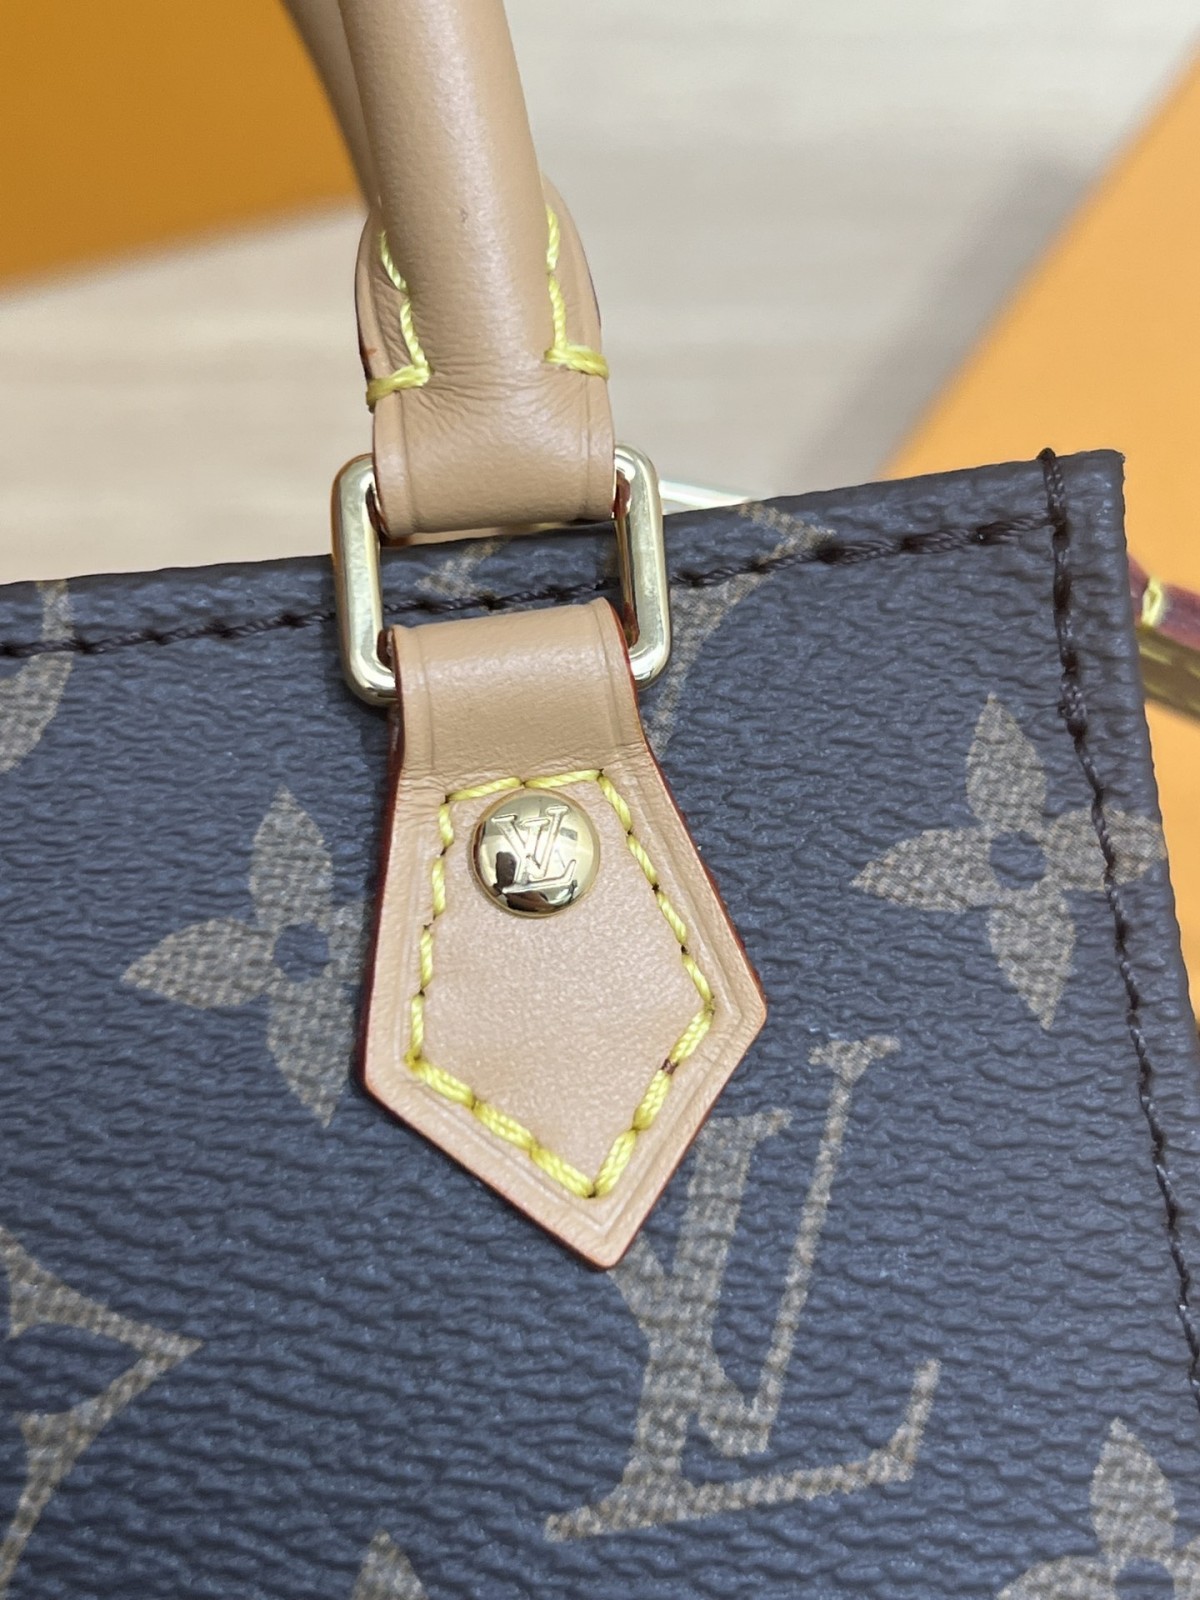 How good quality is a Shebag Louis Vuitton PETIT SAC PLAT bag（2023 udpated）-ఉత్తమ నాణ్యత నకిలీ లూయిస్ విట్టన్ బ్యాగ్ ఆన్‌లైన్ స్టోర్, రెప్లికా డిజైనర్ బ్యాగ్ రు